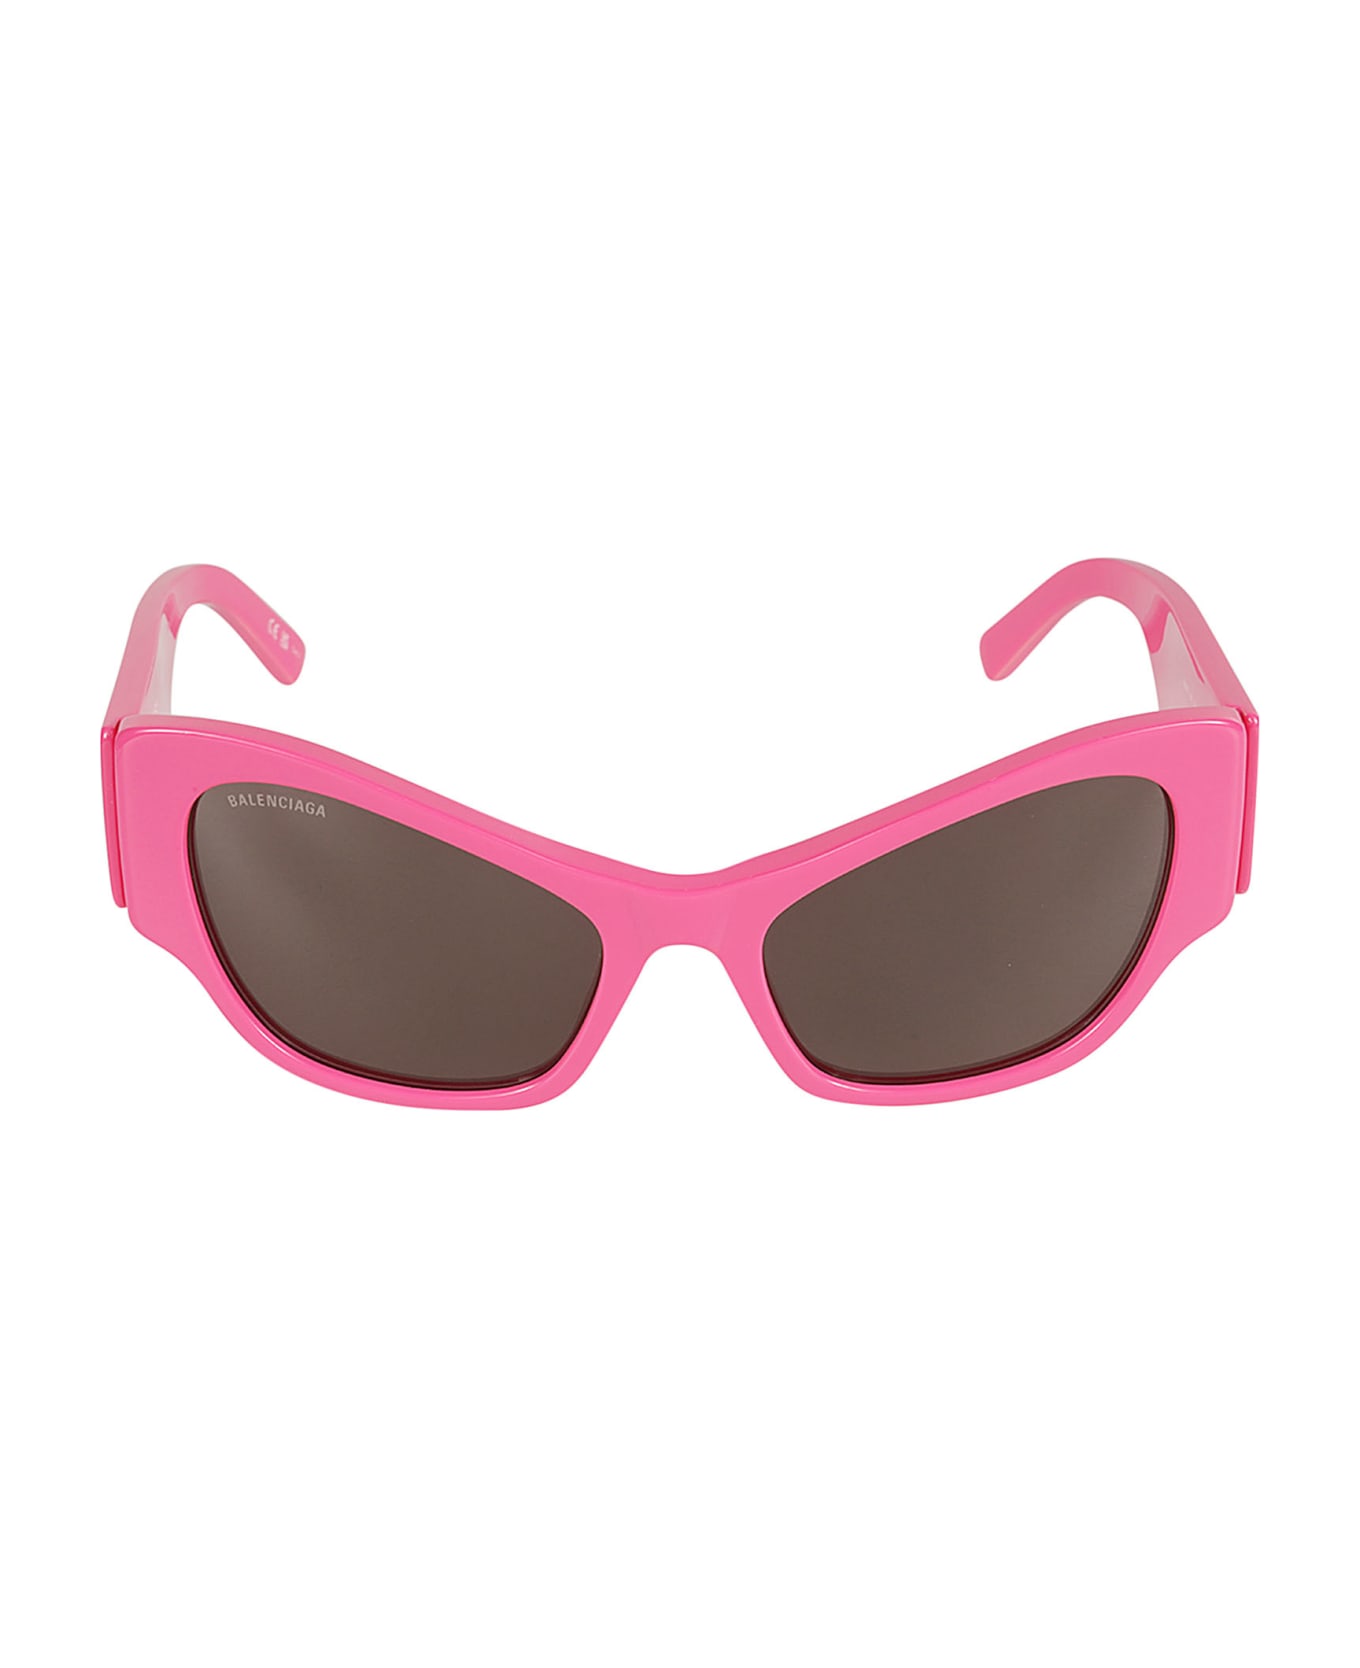 Balenciaga Eyewear Logo Sided Sunglasses - Fuchsia/Grey